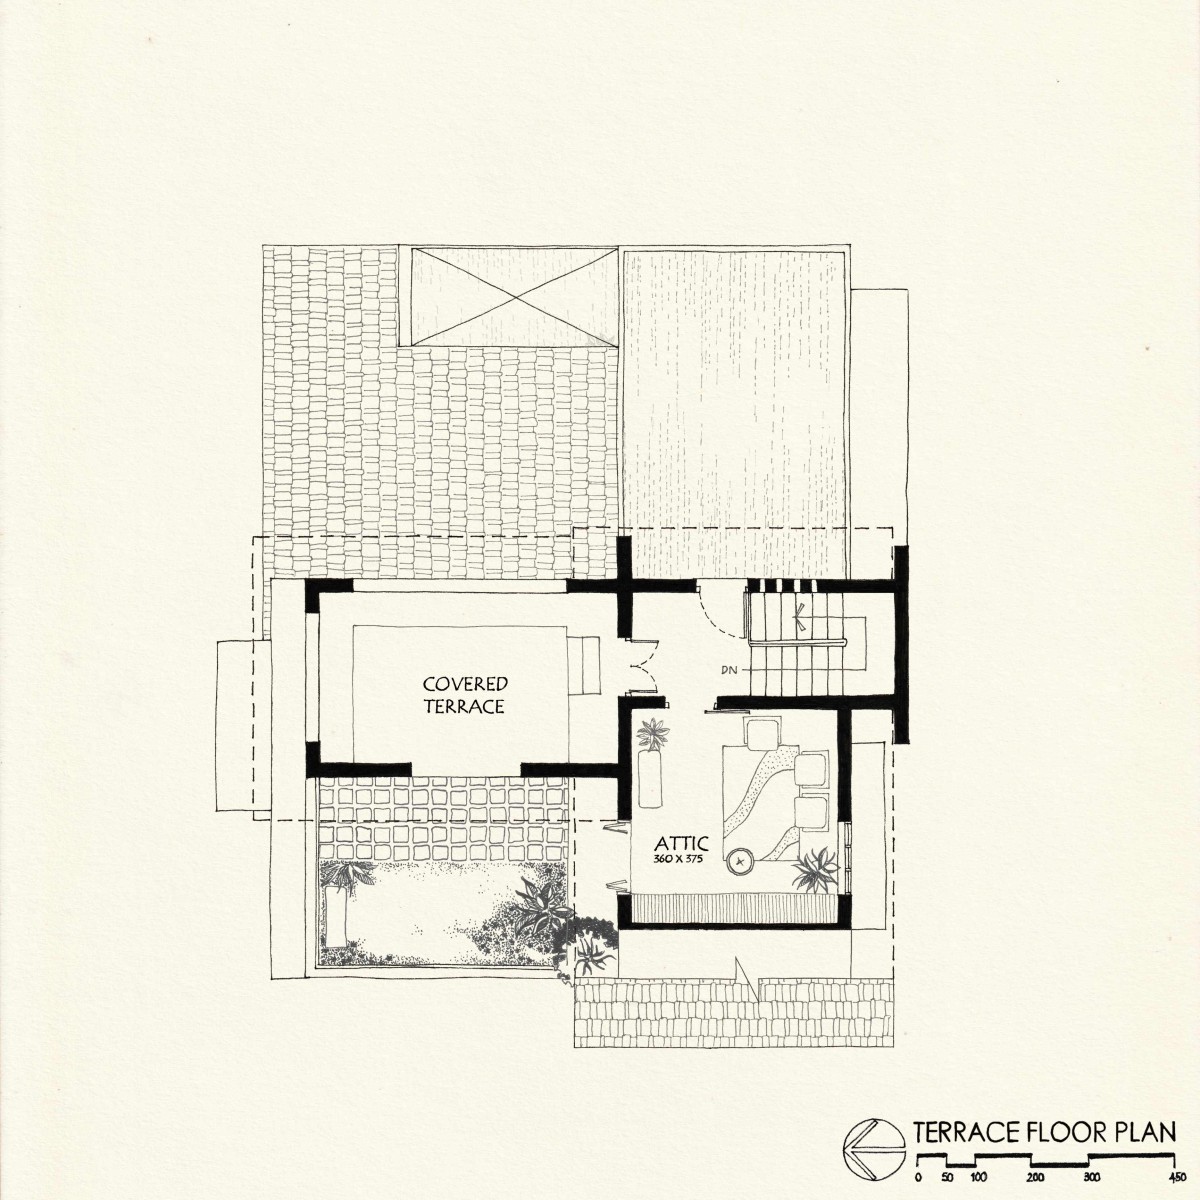 Terrace Floor Plan of Admay by Ishtika Design Studio